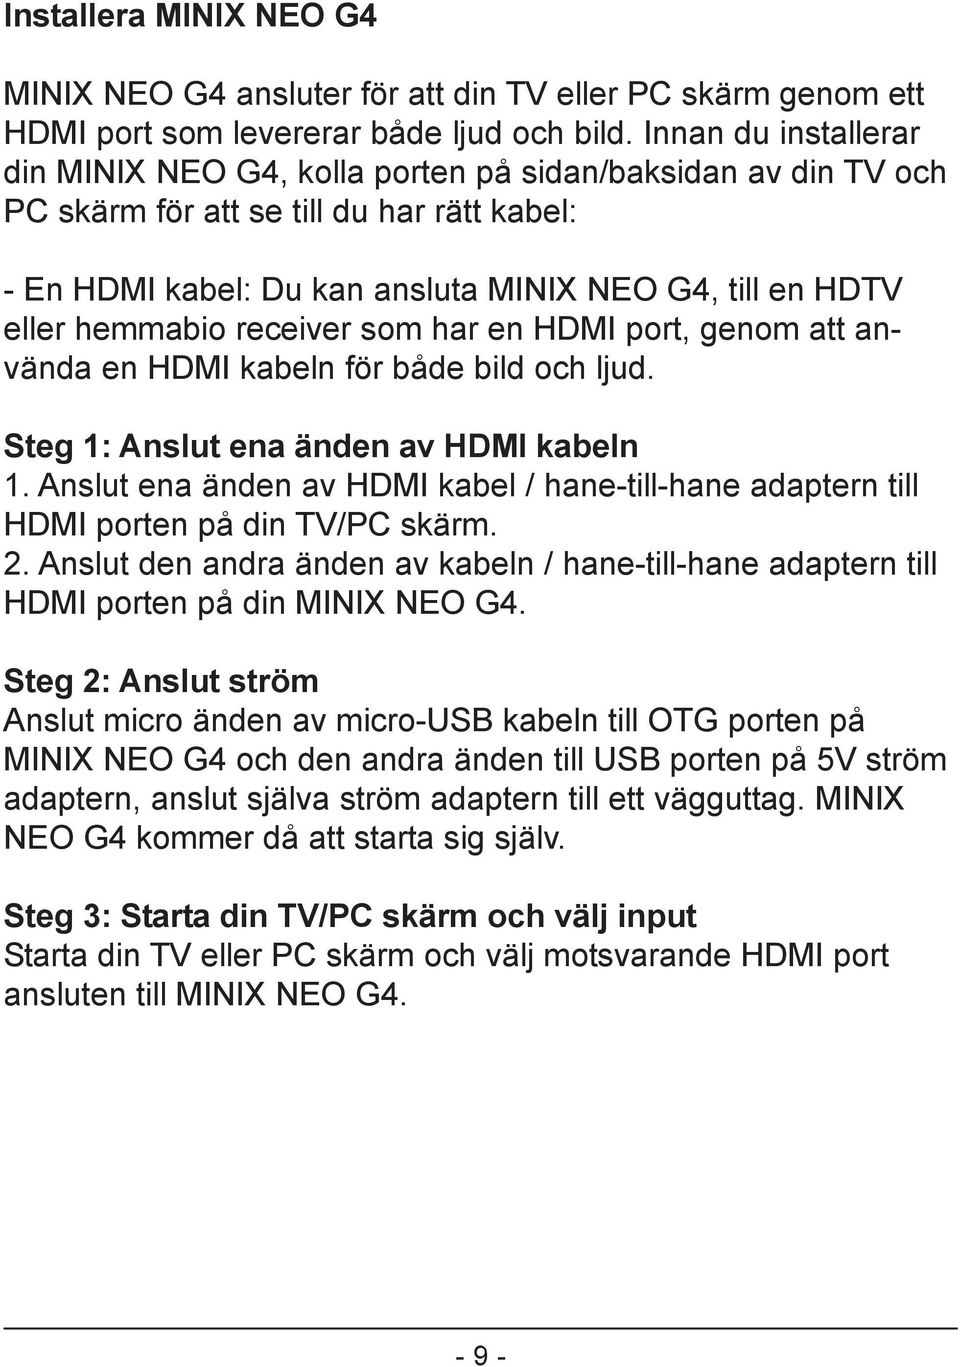 hemmabio receiver som har en HDMI port, genom att använda en HDMI kabeln för både bild och ljud. Steg 1: Anslut ena änden av HDMI kabeln 1.